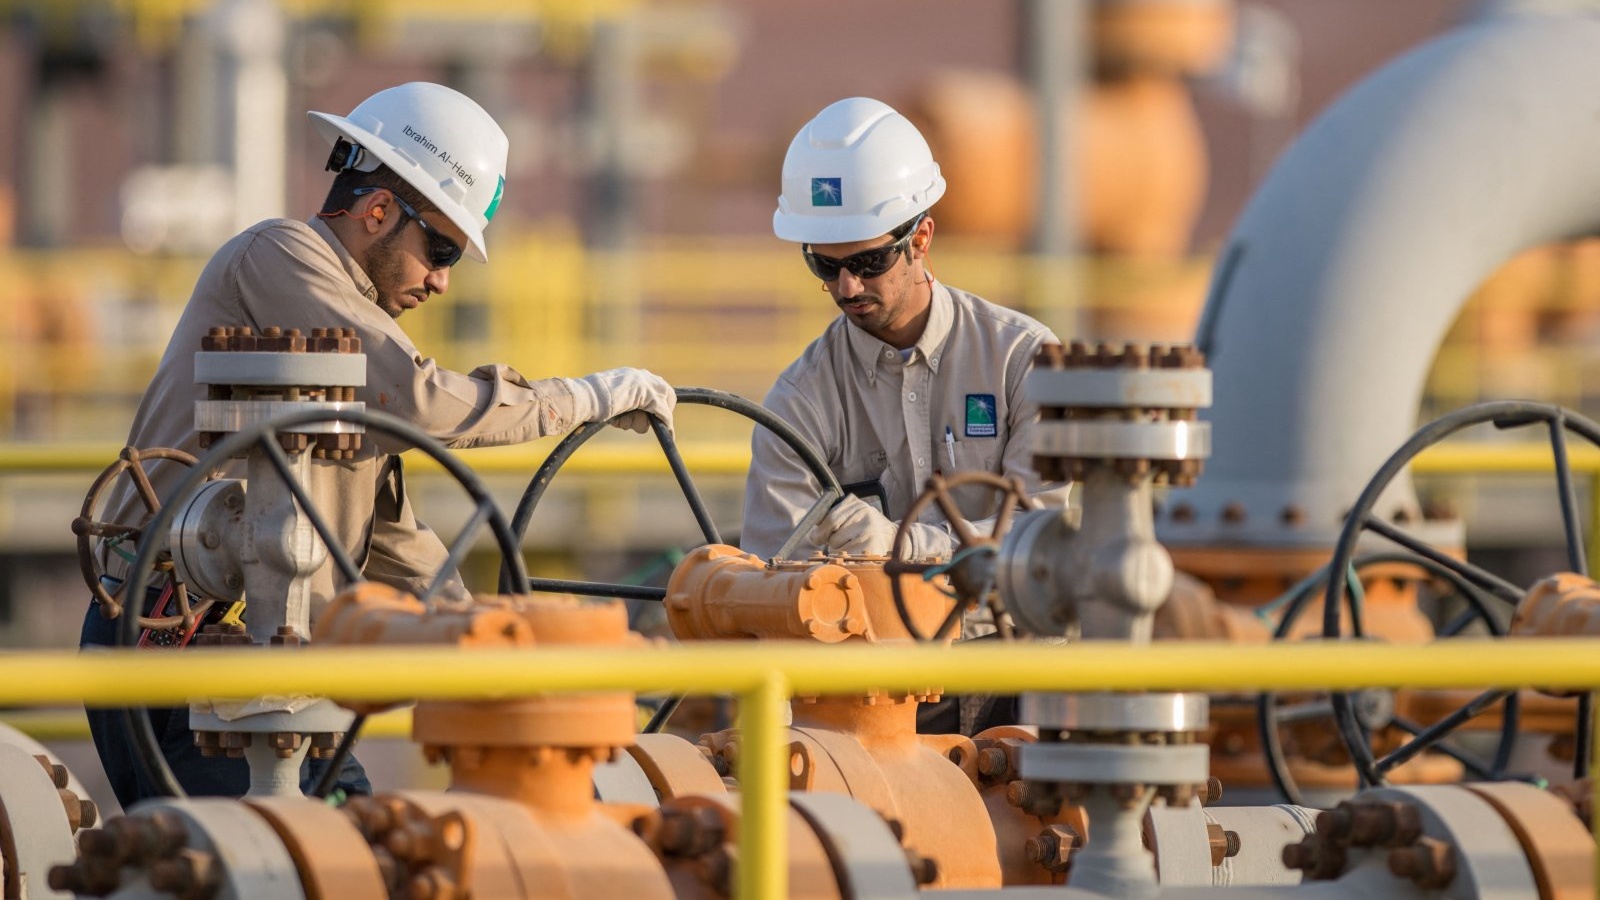 مهندسان يعملان في منشأة أرامكو النفطية السعودية